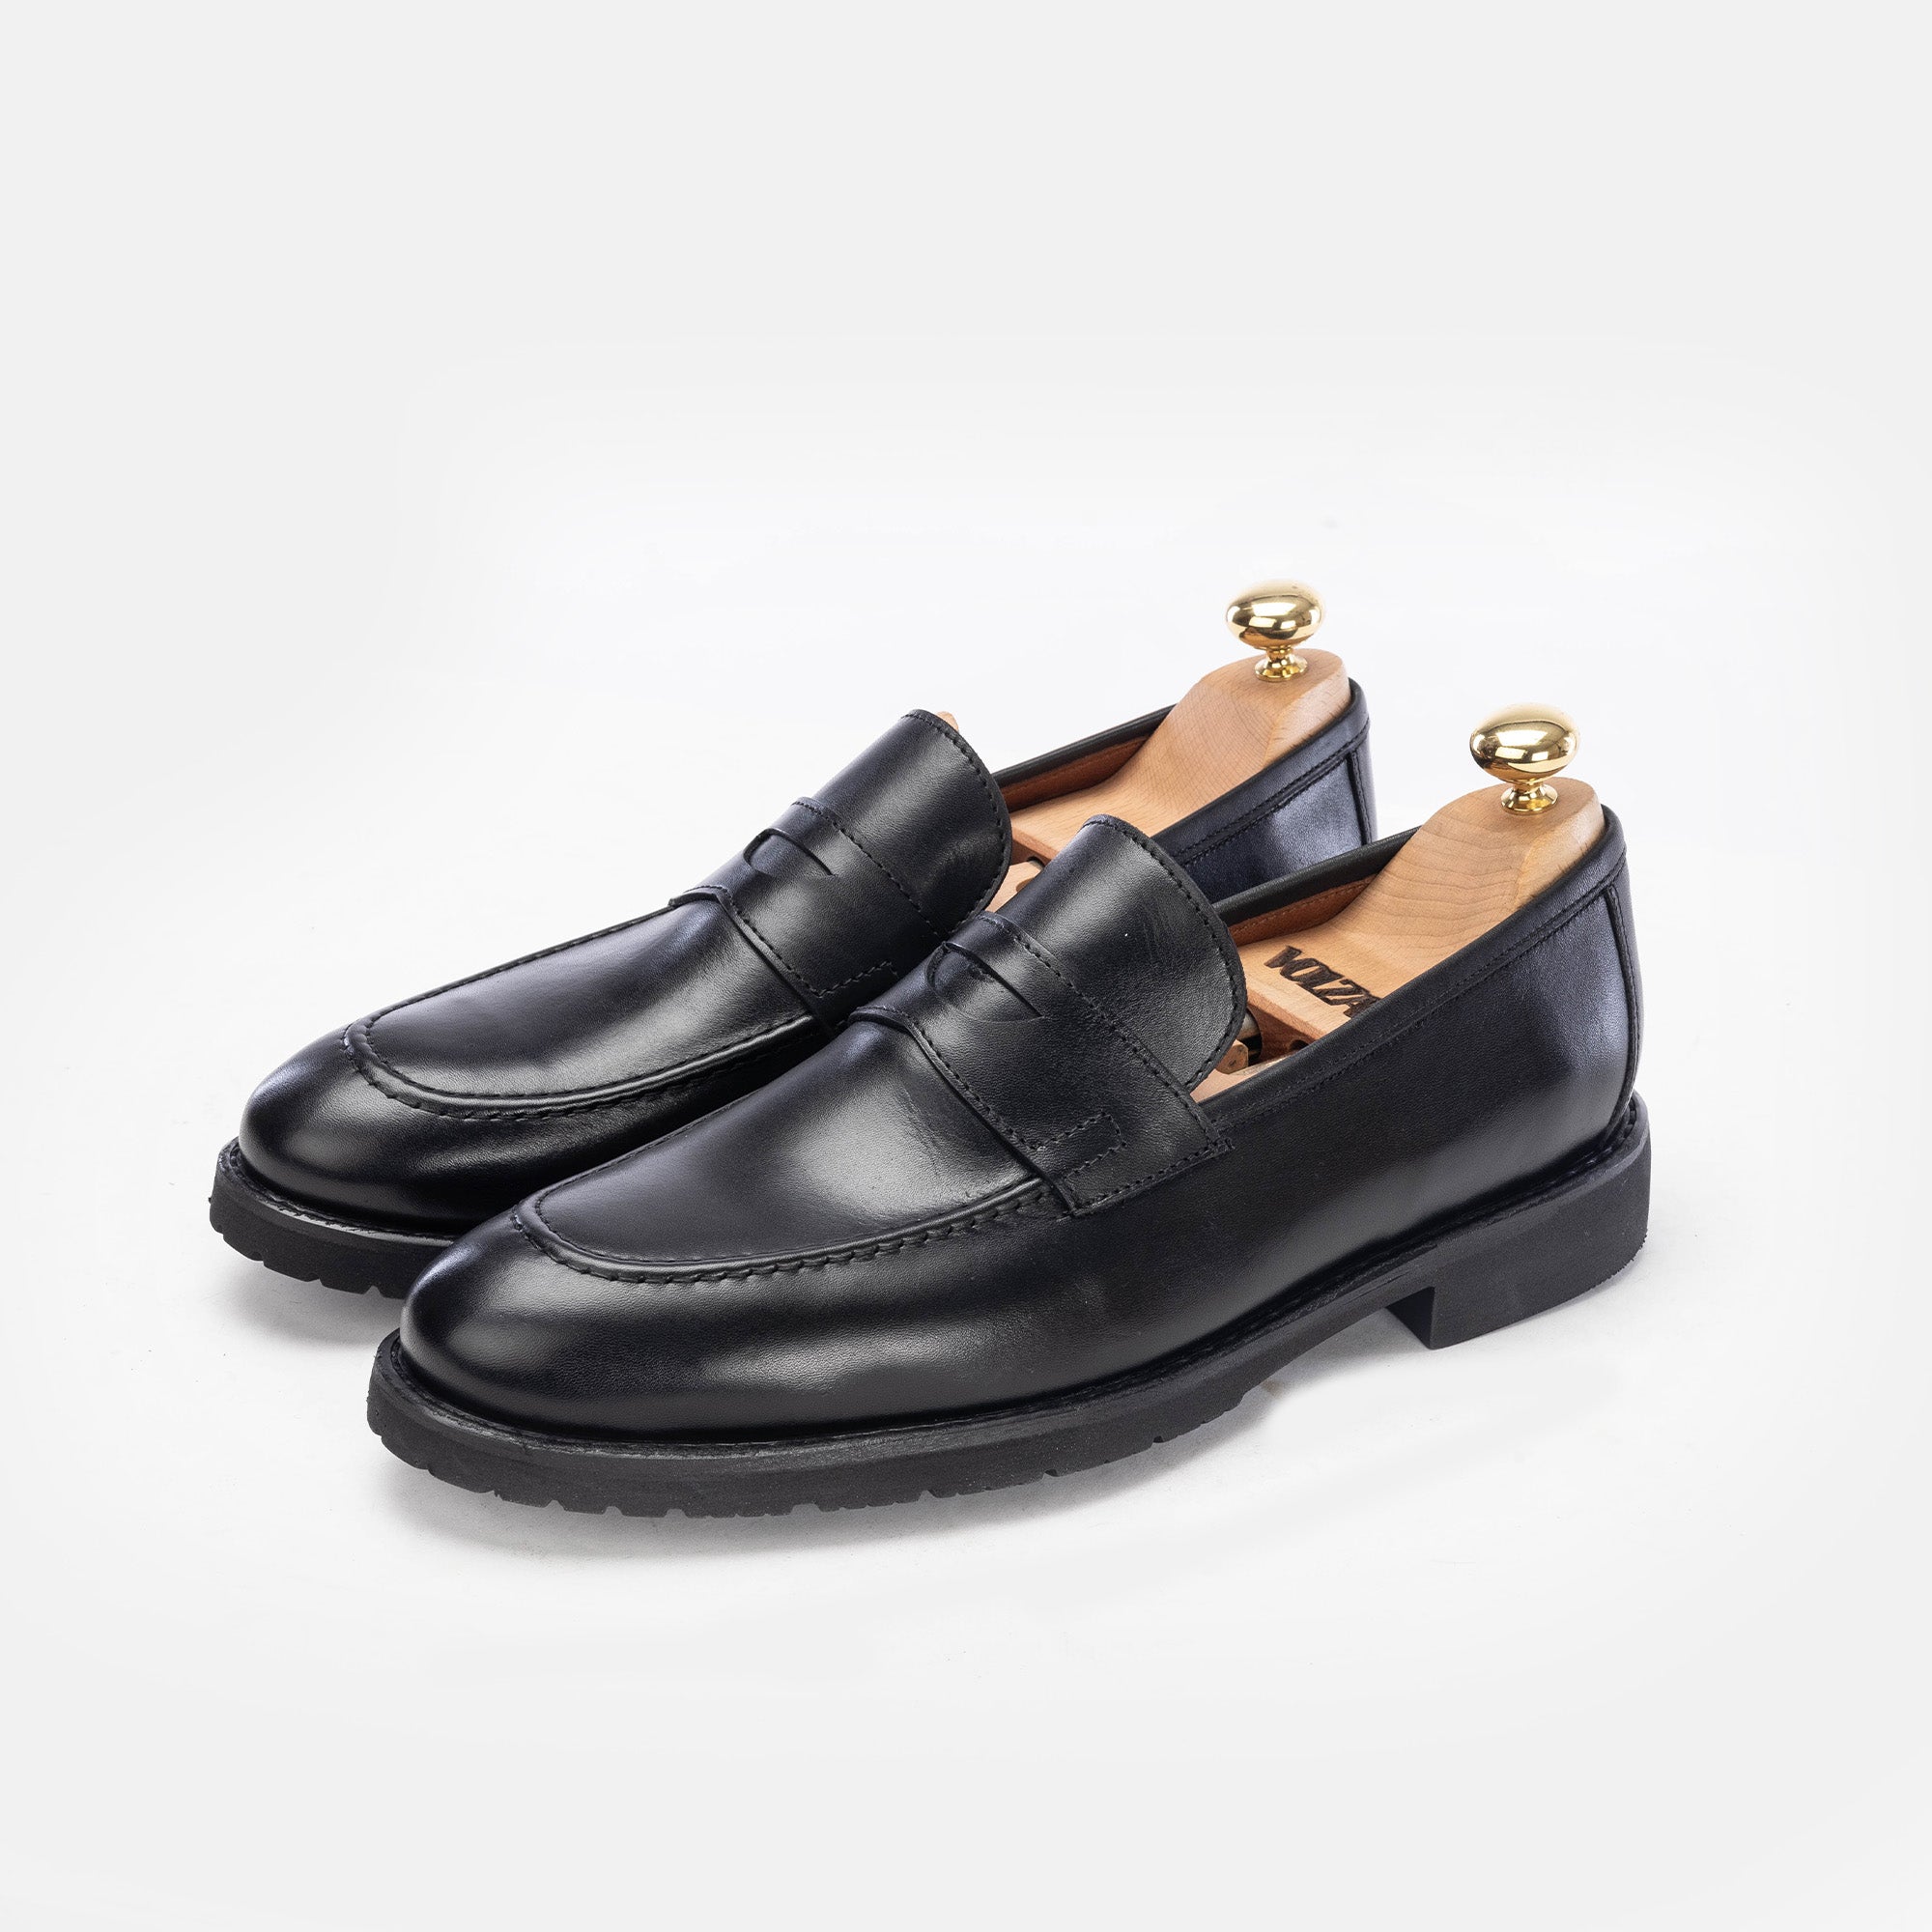 '5158 chaussure cuir noir